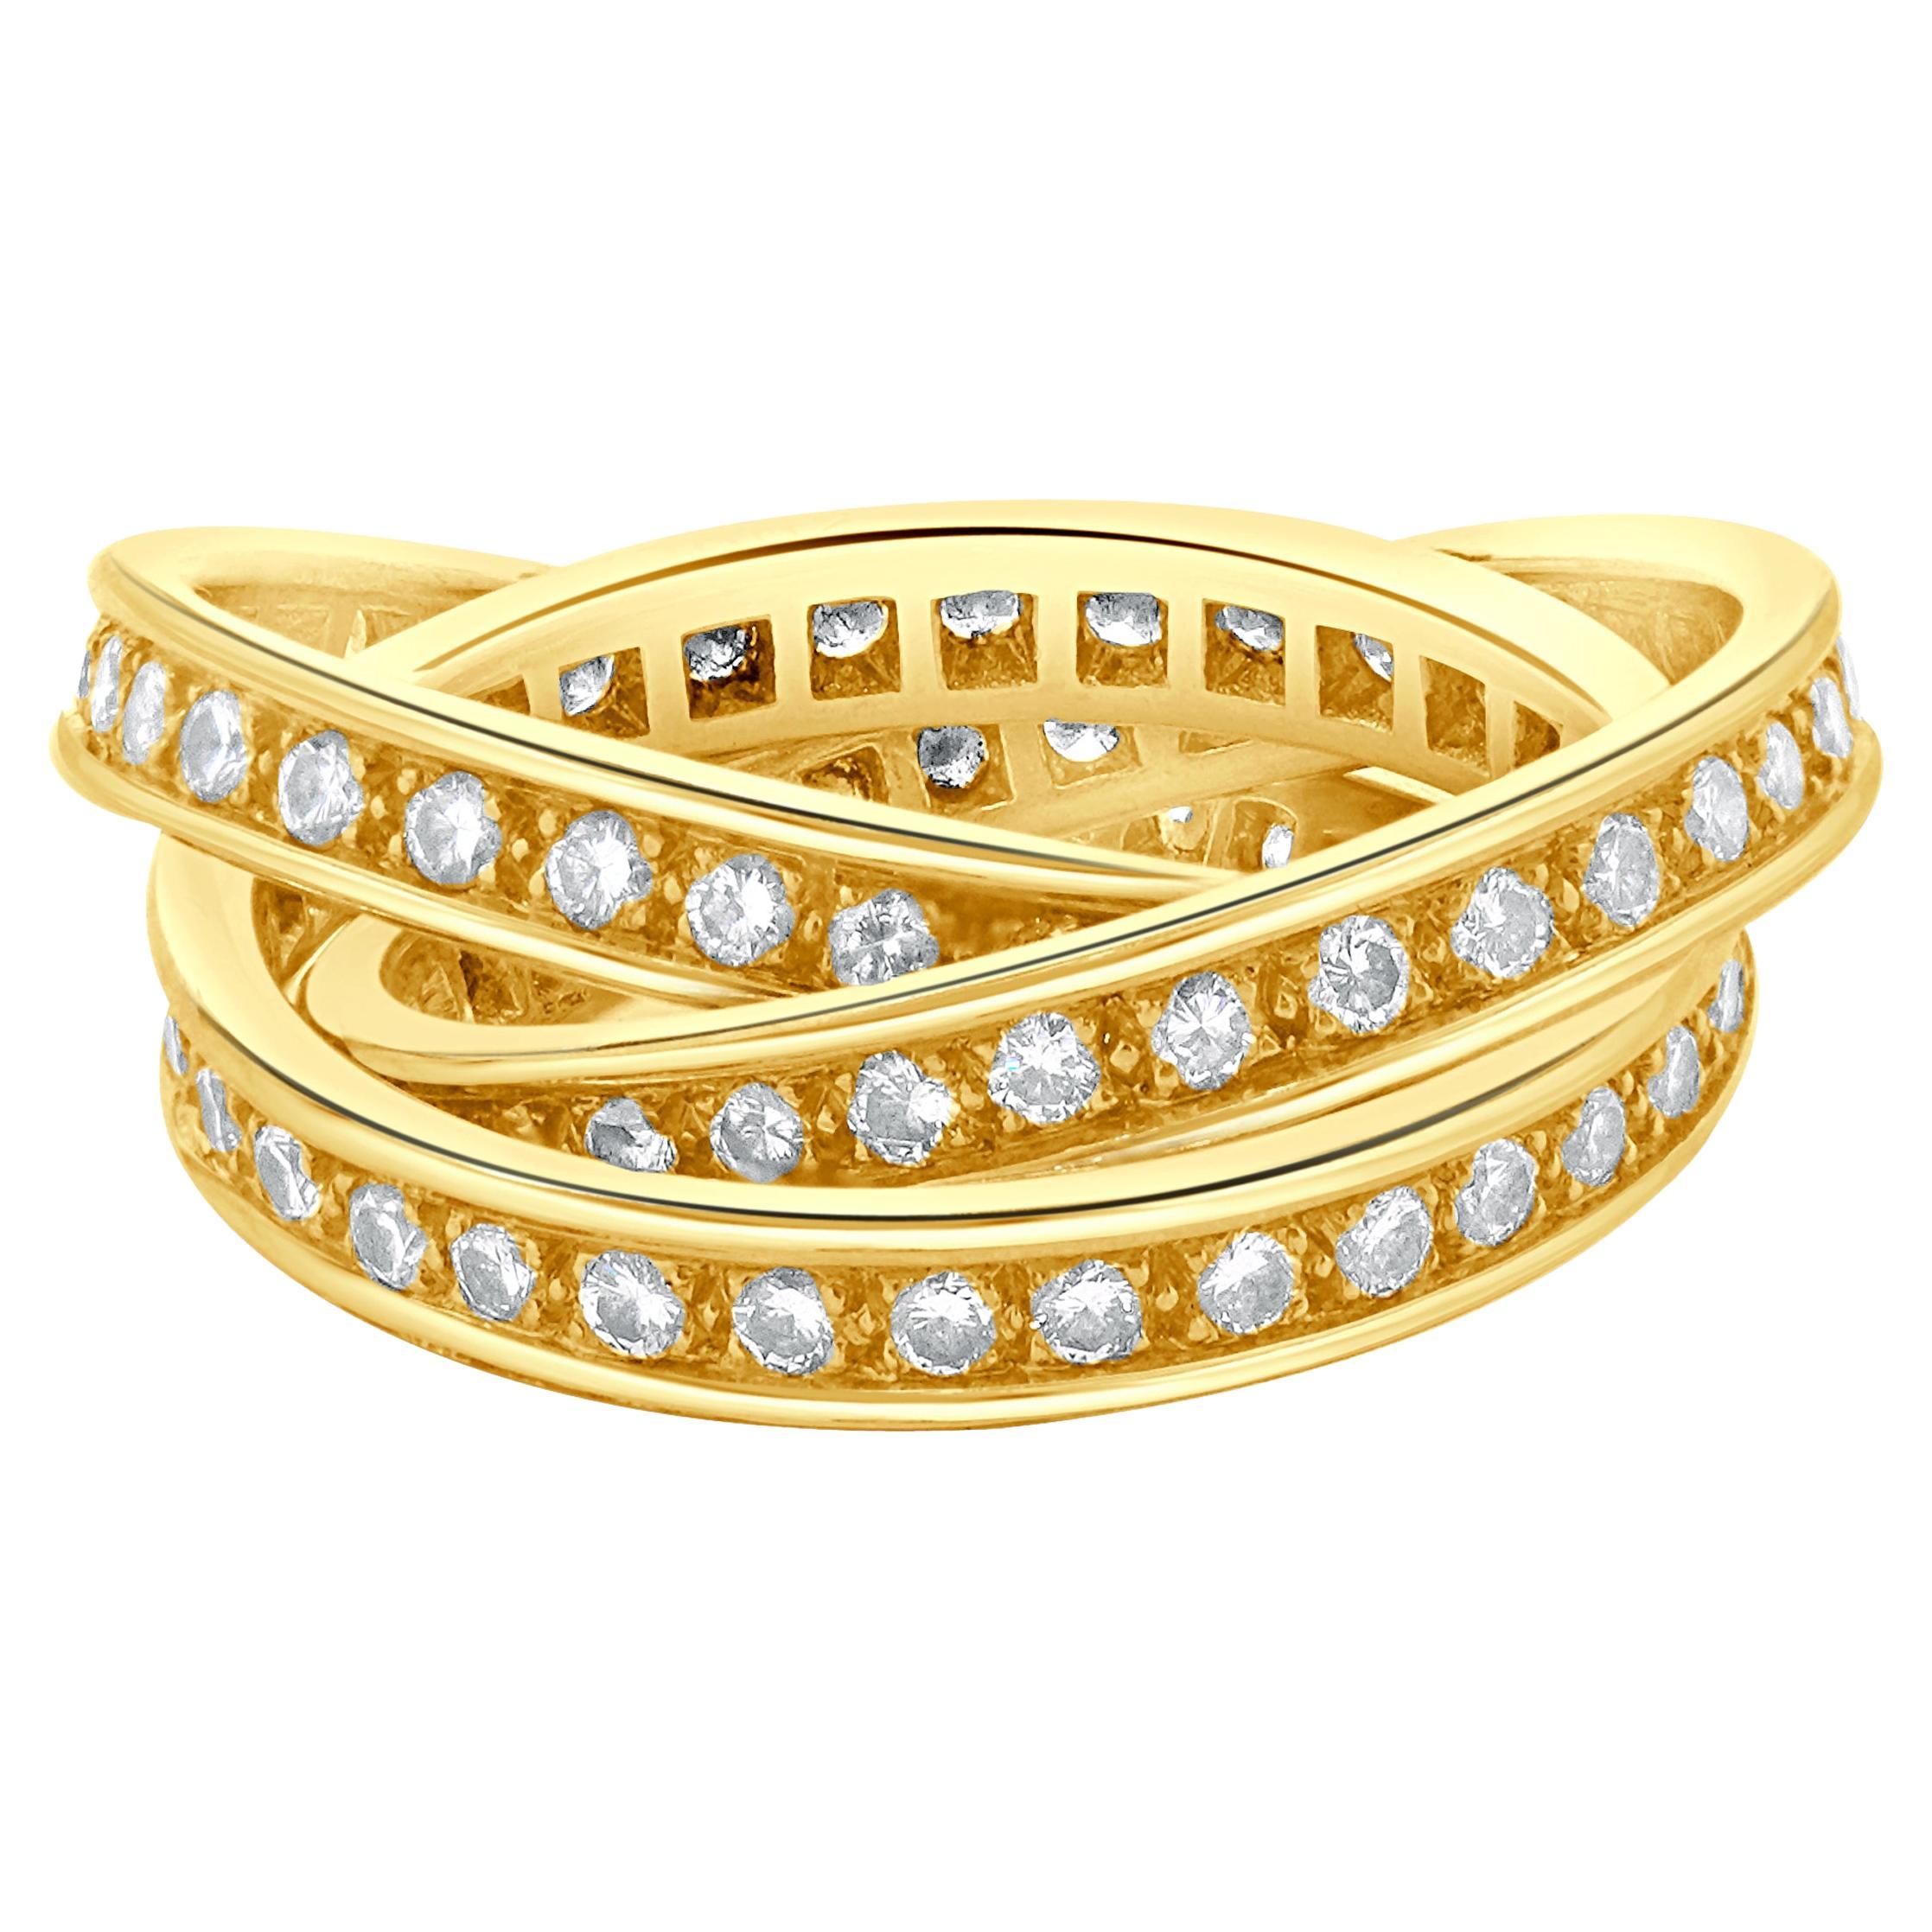 Cartier, bague Trinity en or jaune 18 carats et diamants